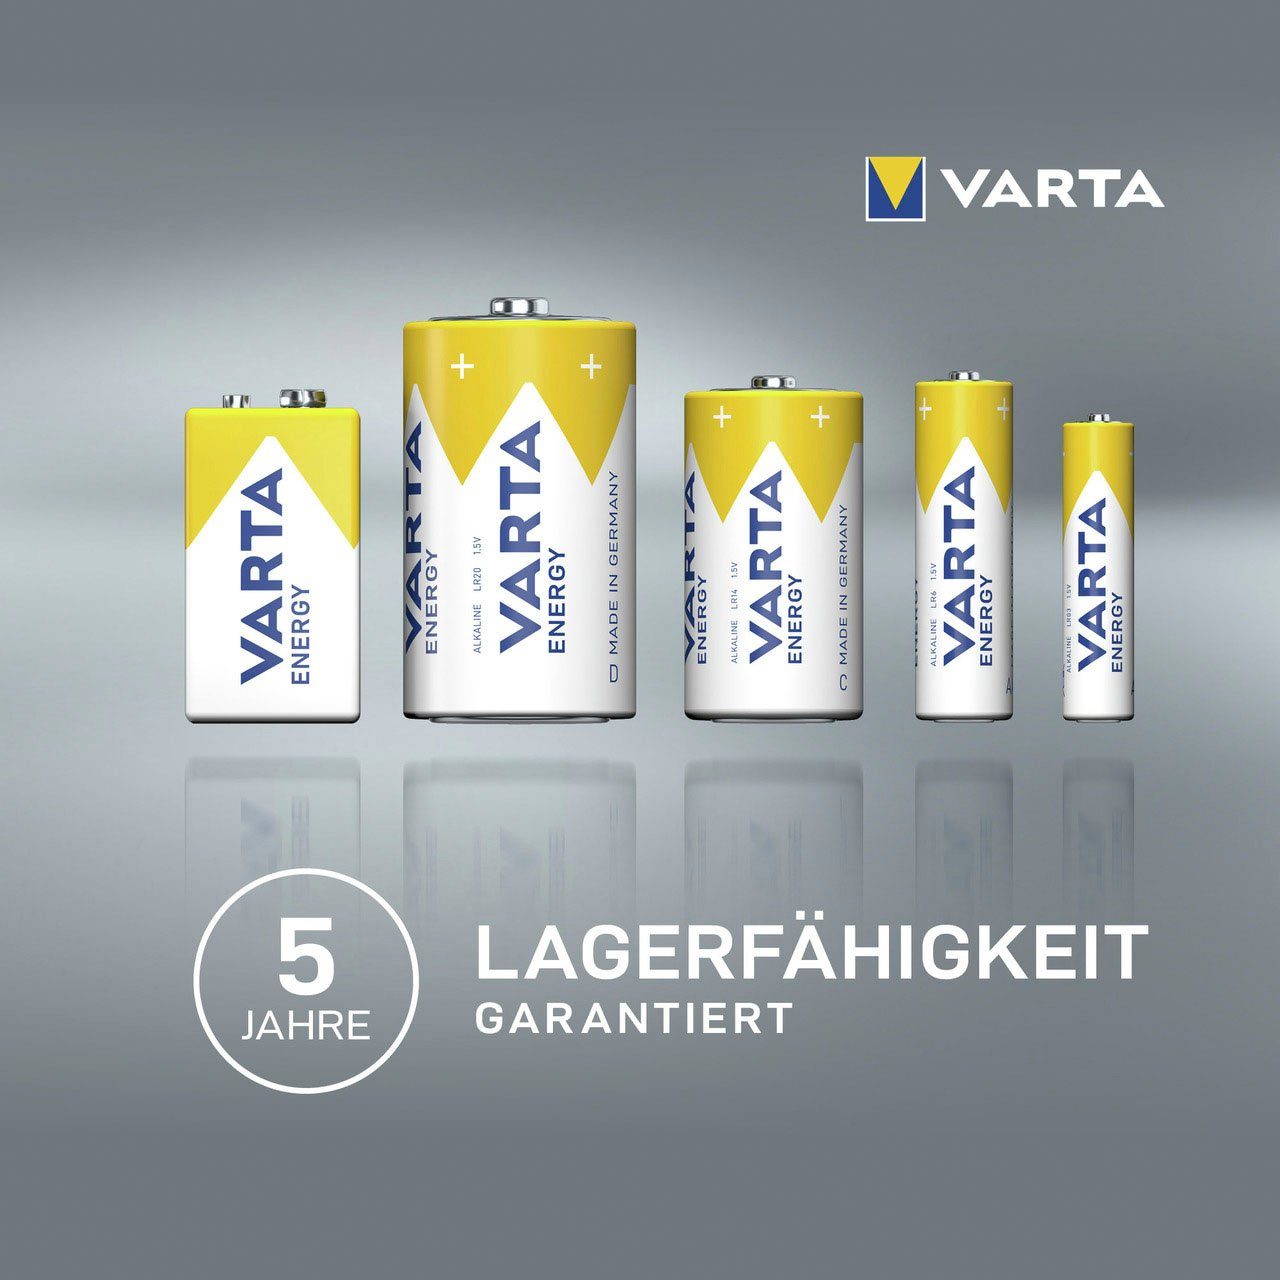 VARTA 50er Pack Energy AAA (50 LR03 St) Batterie, Alkaline Micro